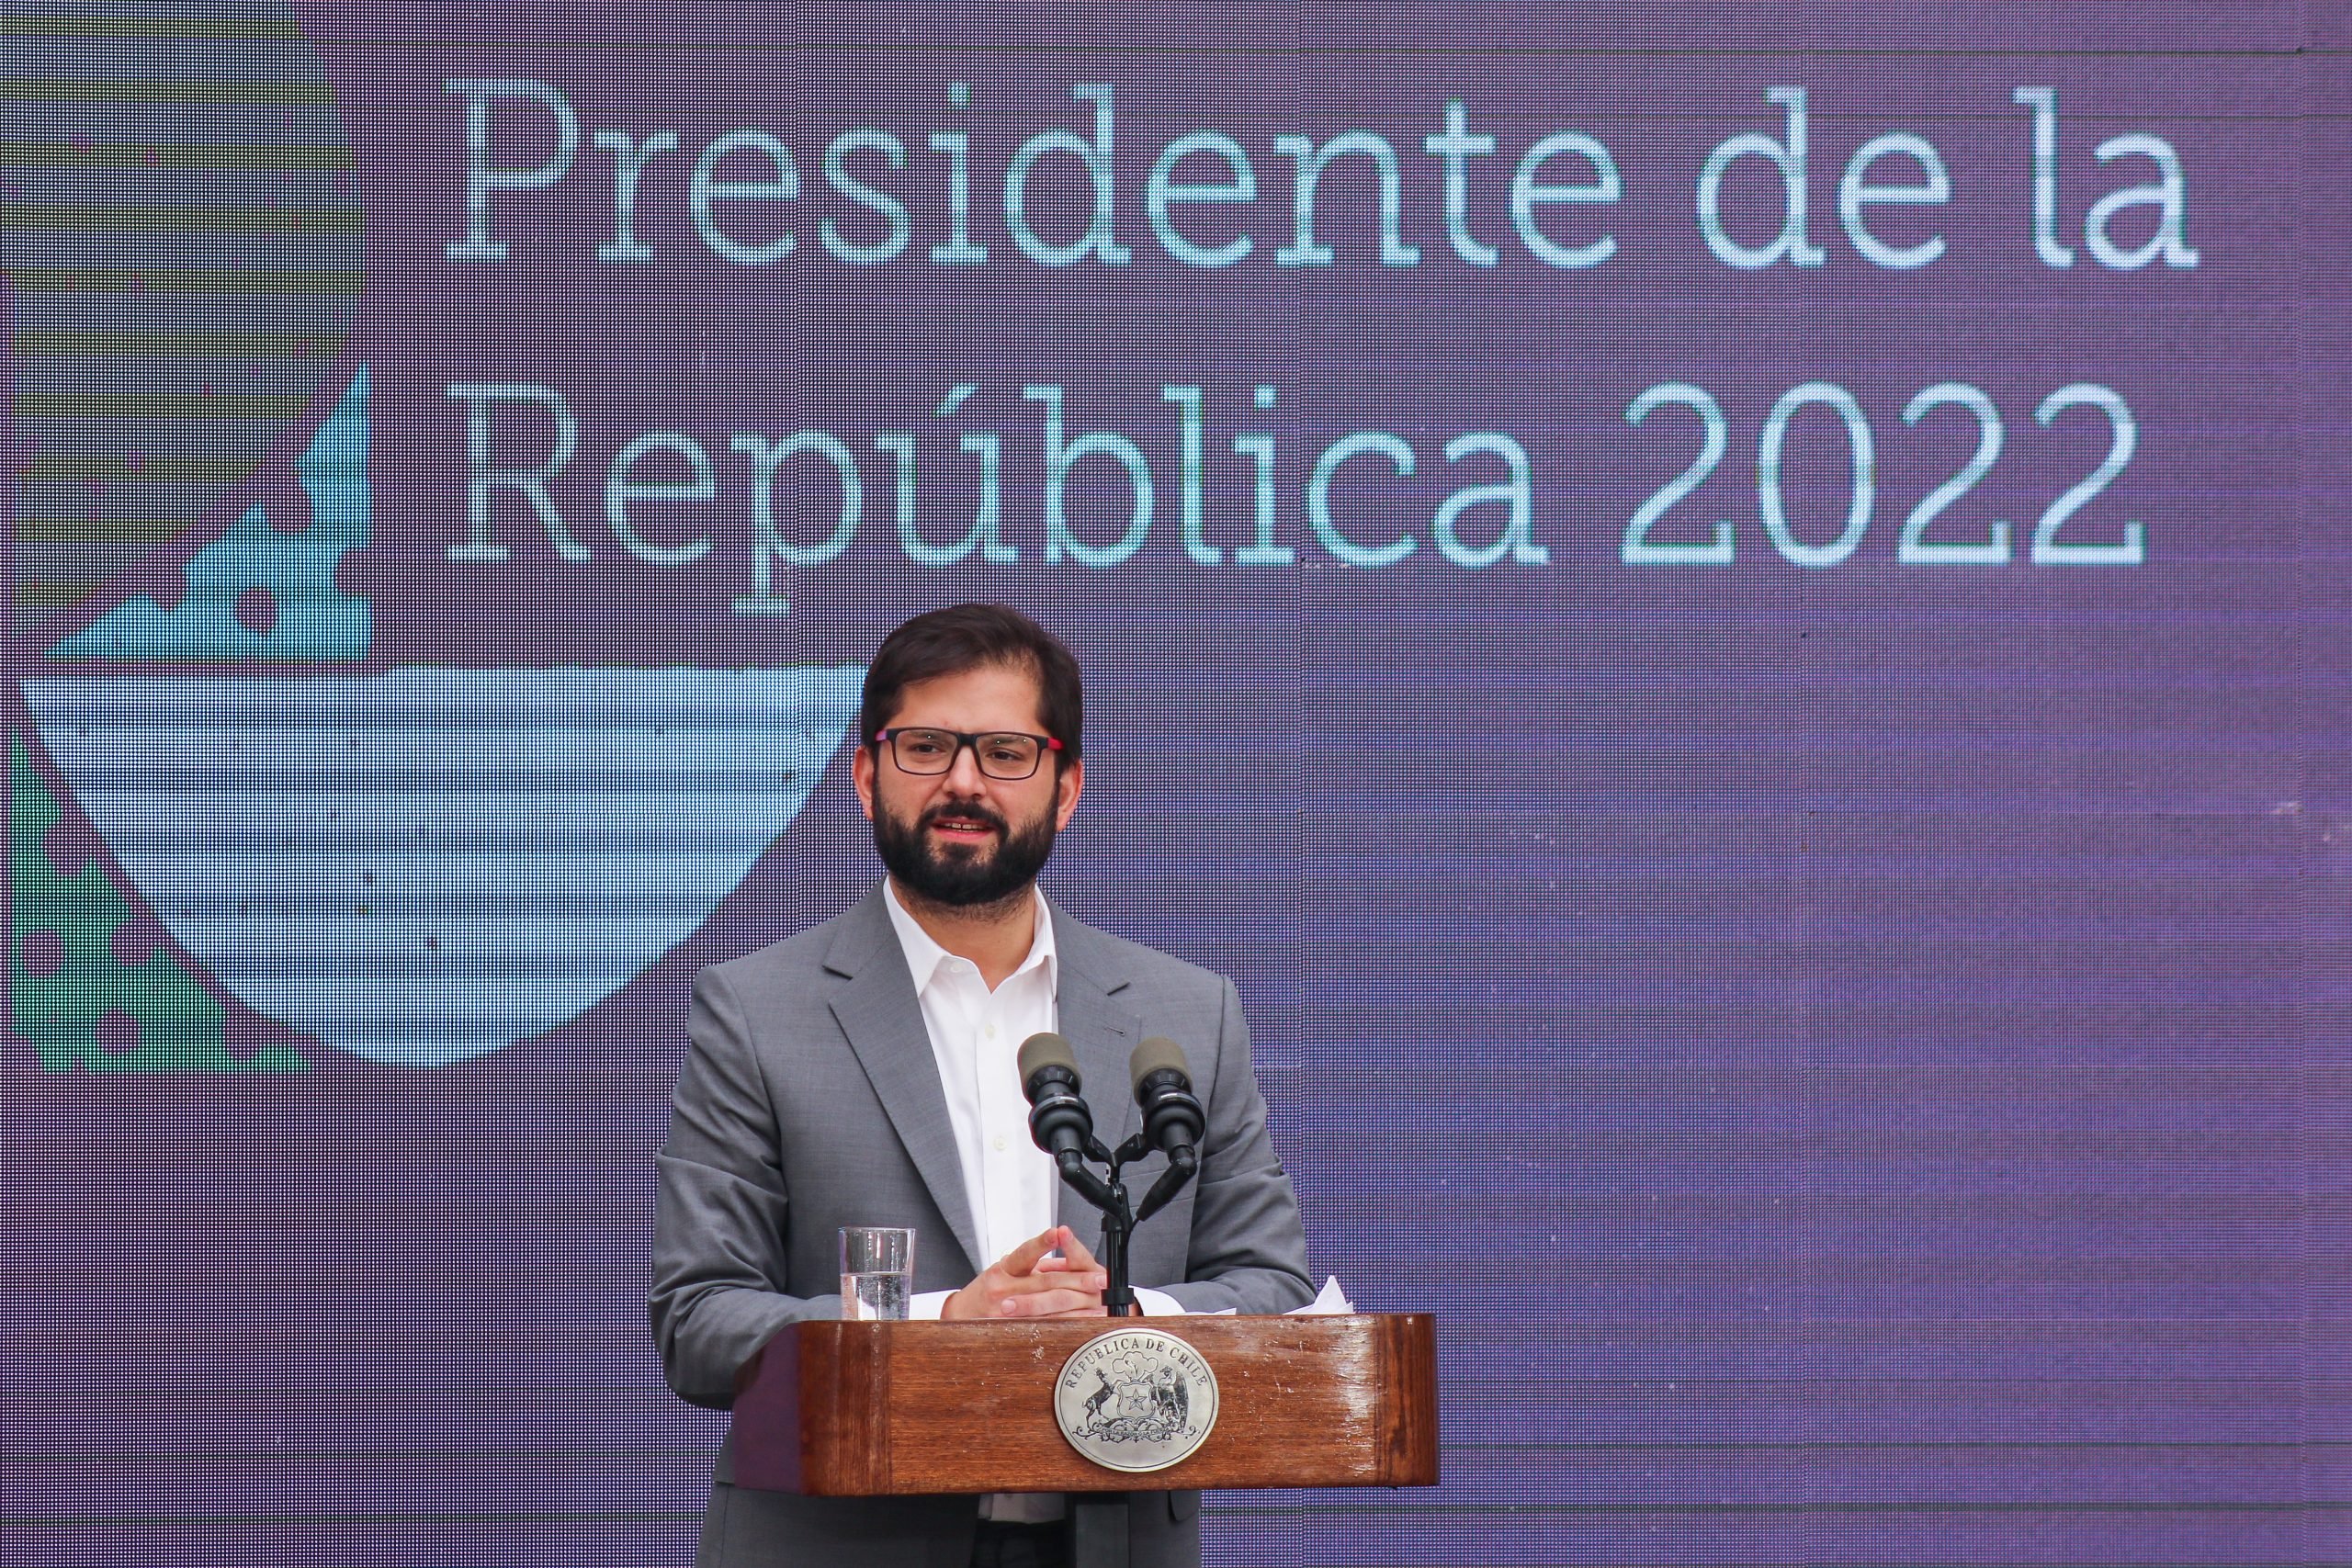 Presidente Boric entregó premios nacionales en La Moneda: Fueron más de 10 ciudadanos los reconocidos